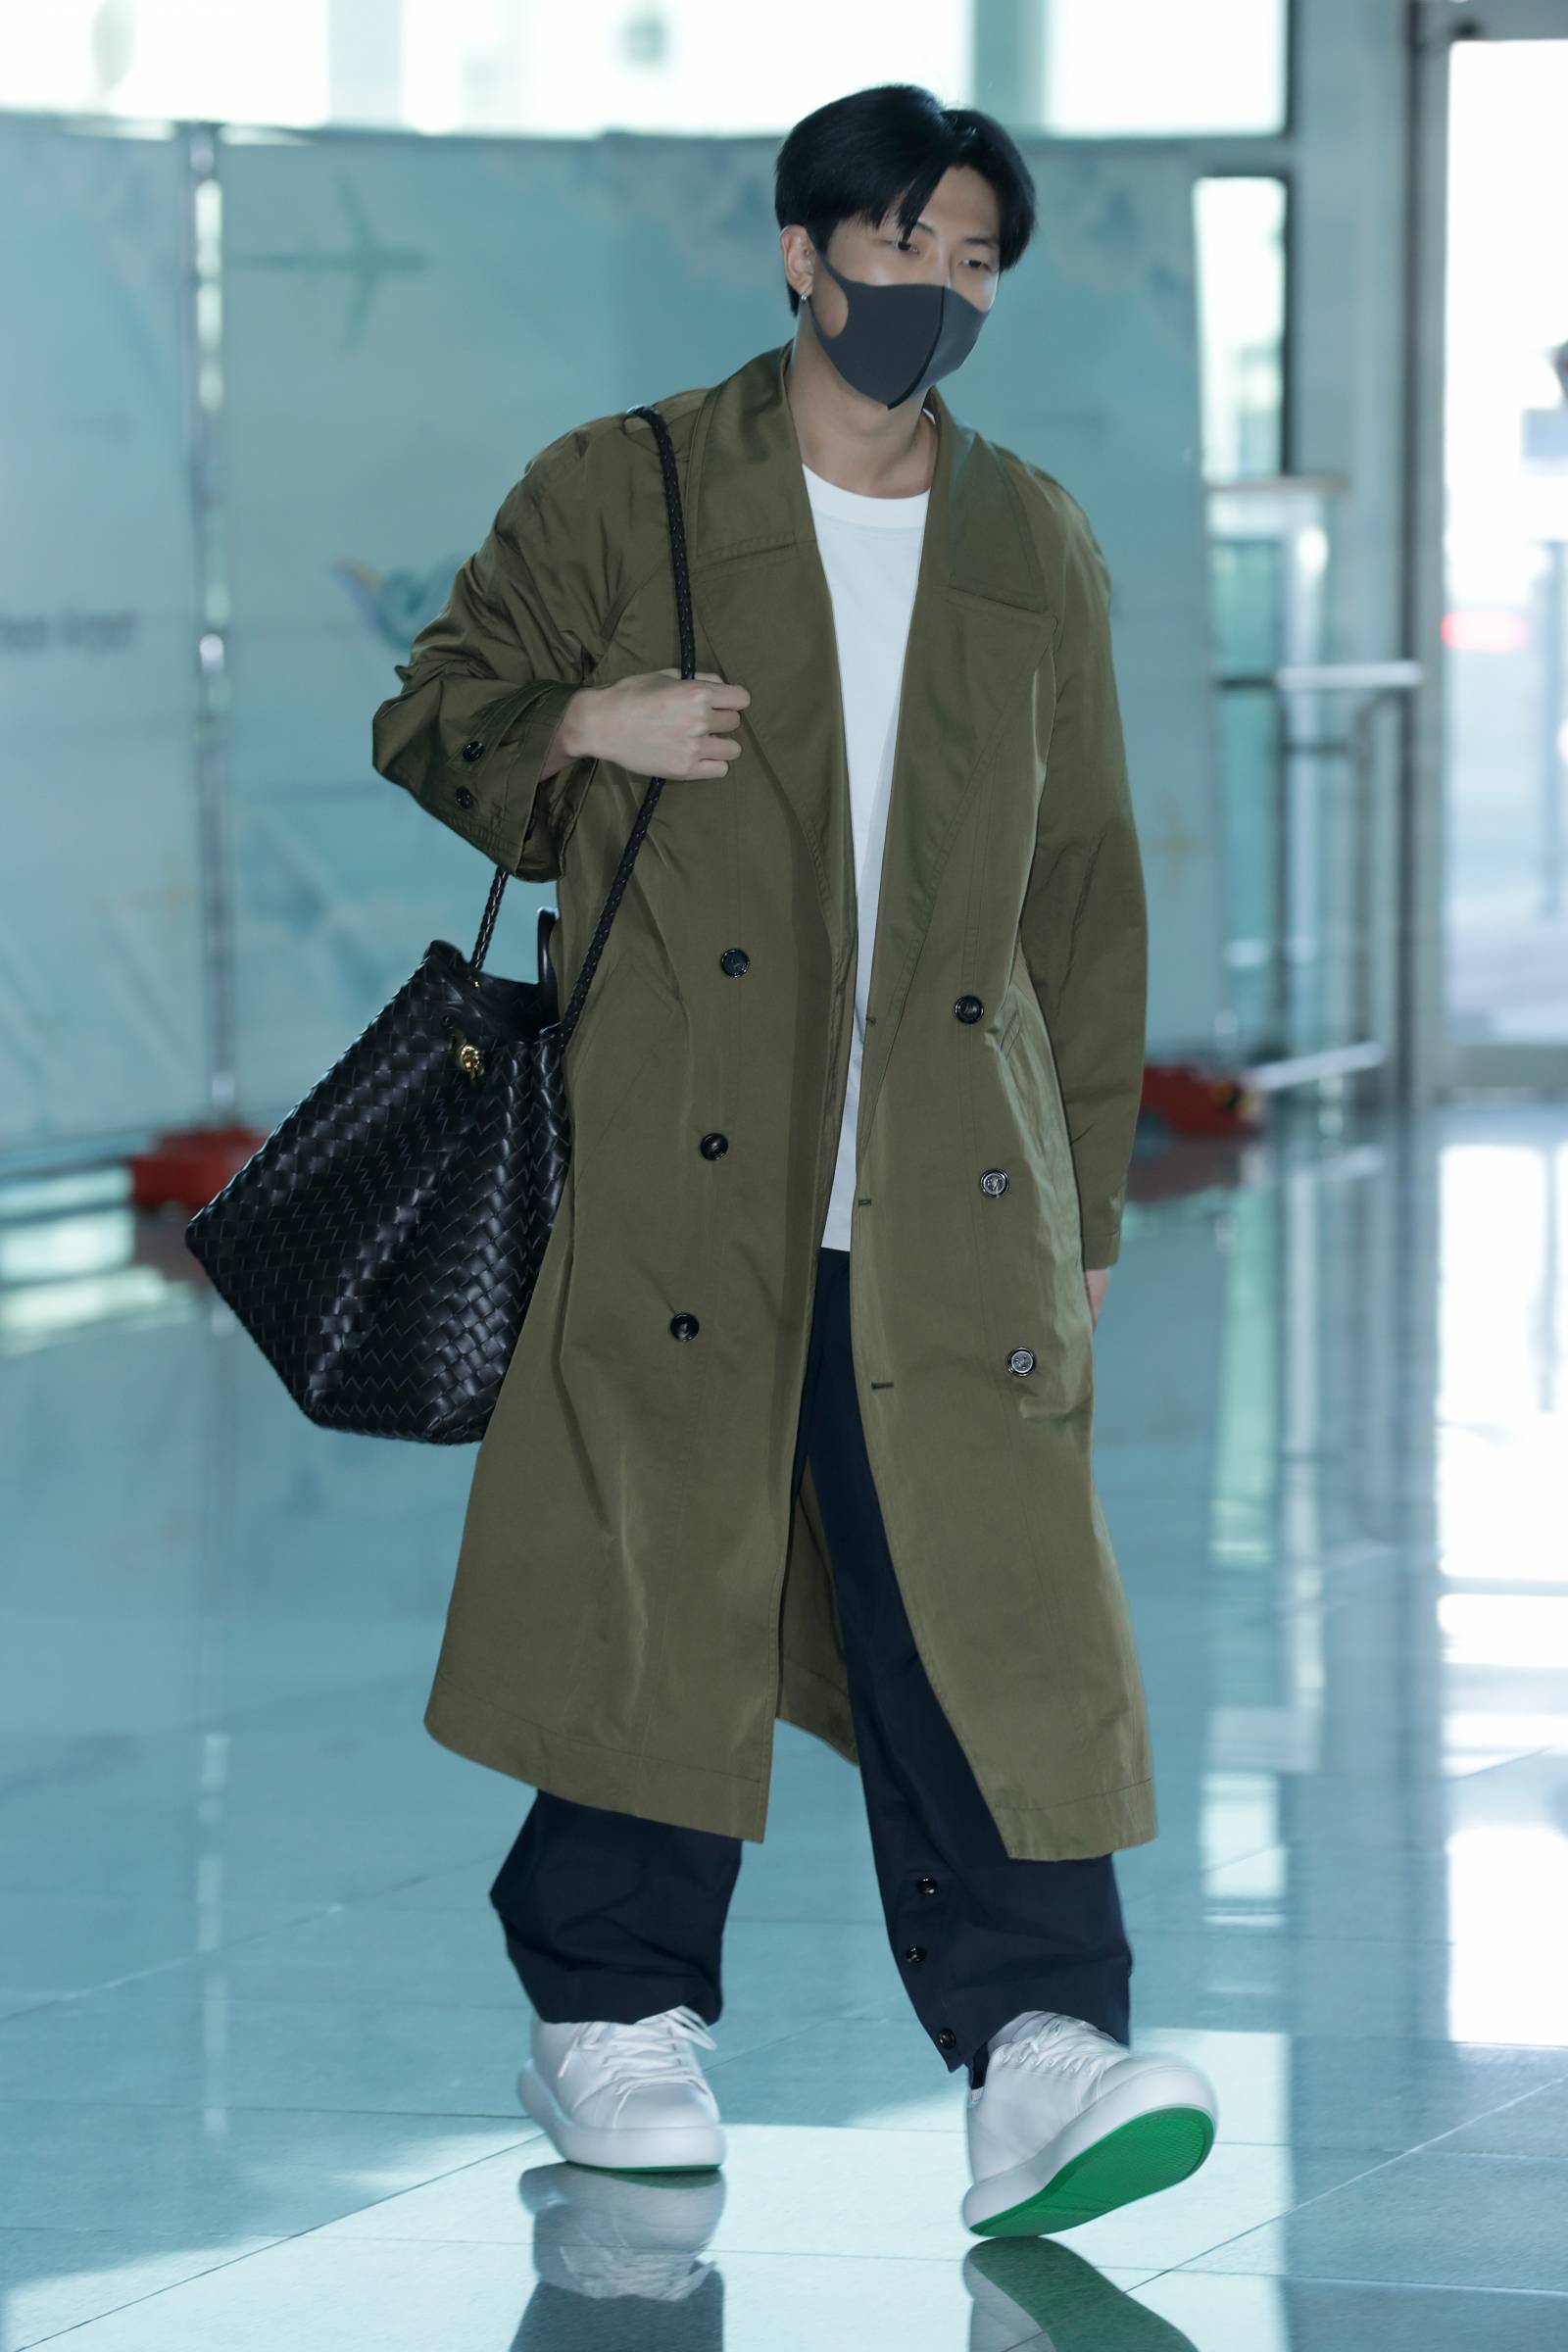 RM z torbą Andiamo na lotnisku w Incheon (fot. Getty Images)